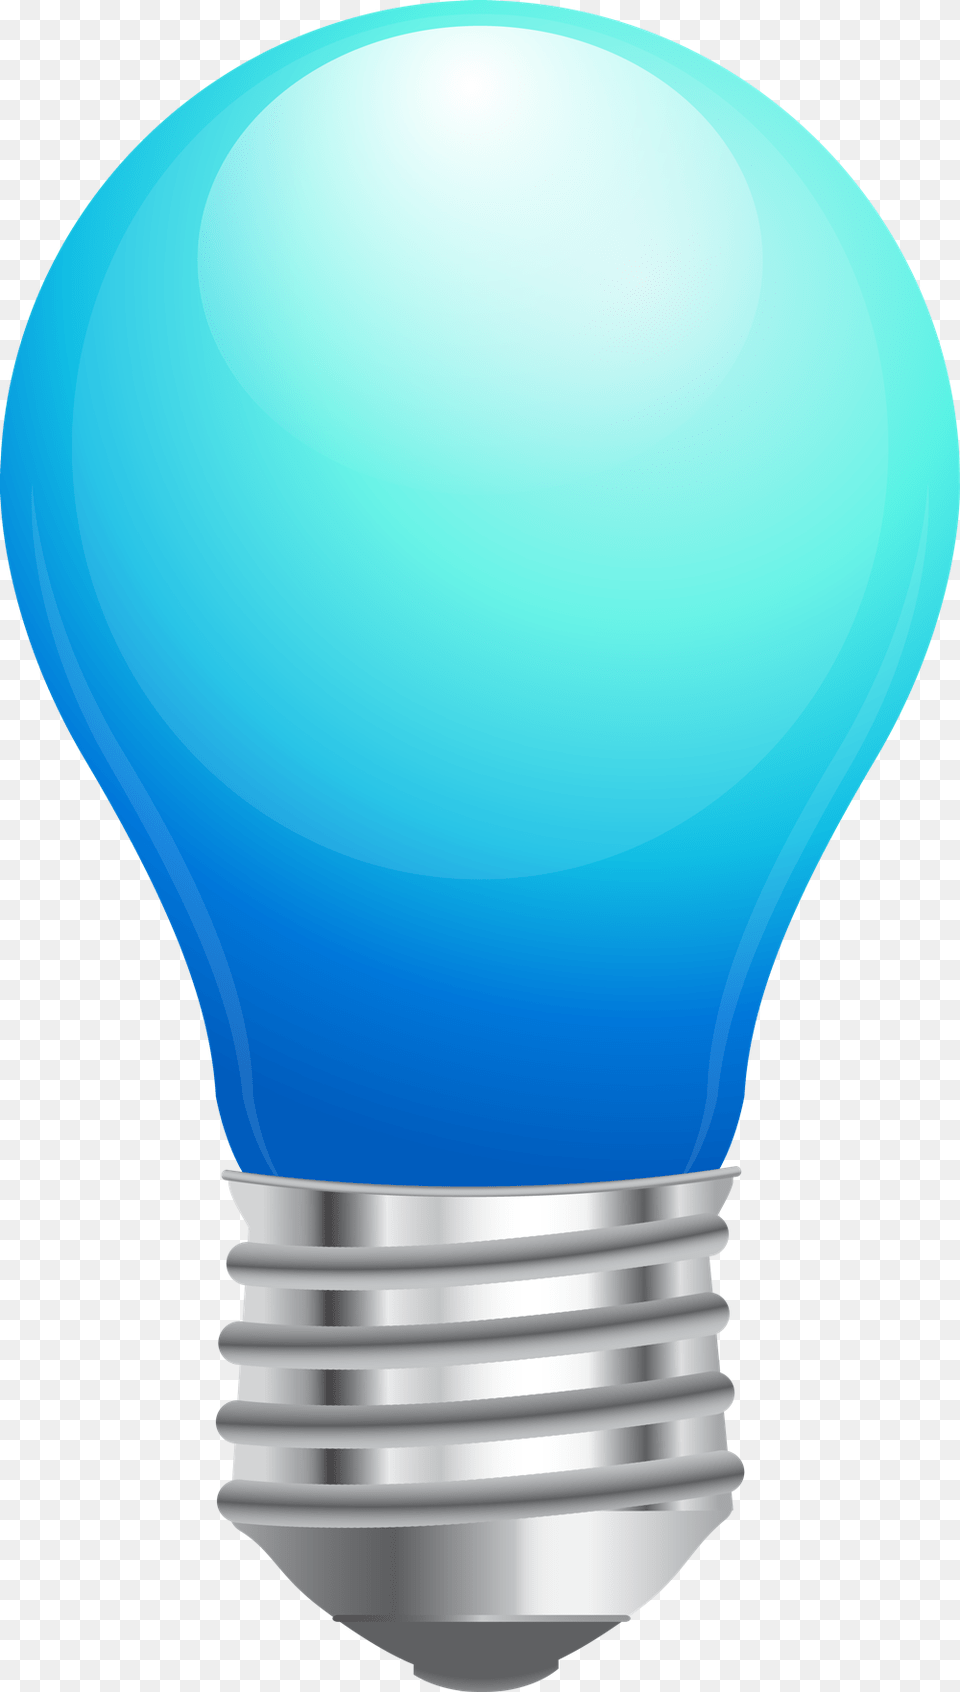 Light Bulb Image Download Best Light Bulb Image Blue Light Bulb Clip Art, Lightbulb Free Png